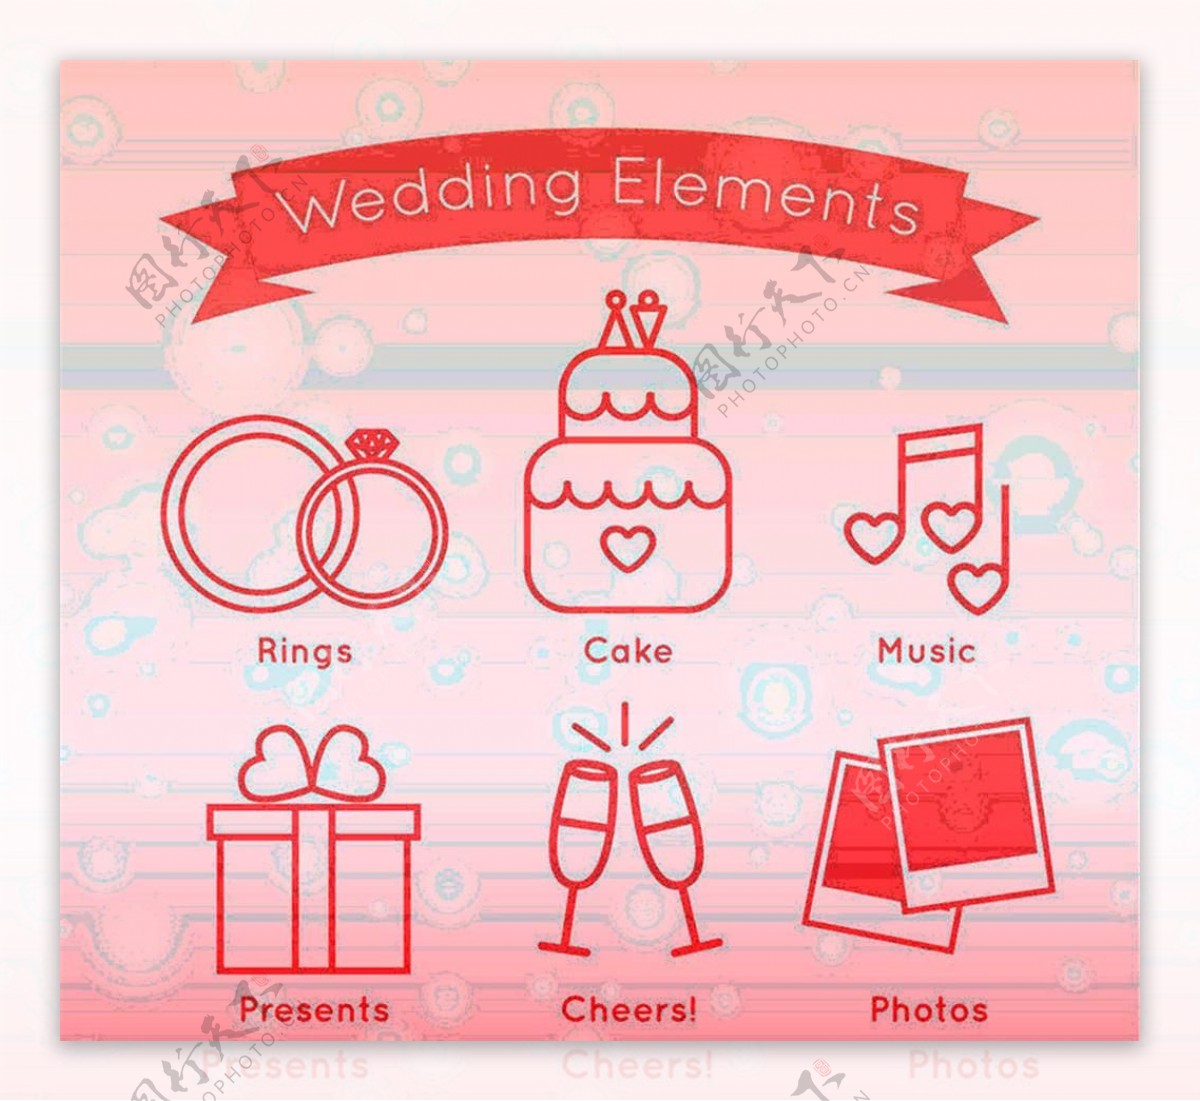 6款简洁粉色婚礼元素图标矢量素